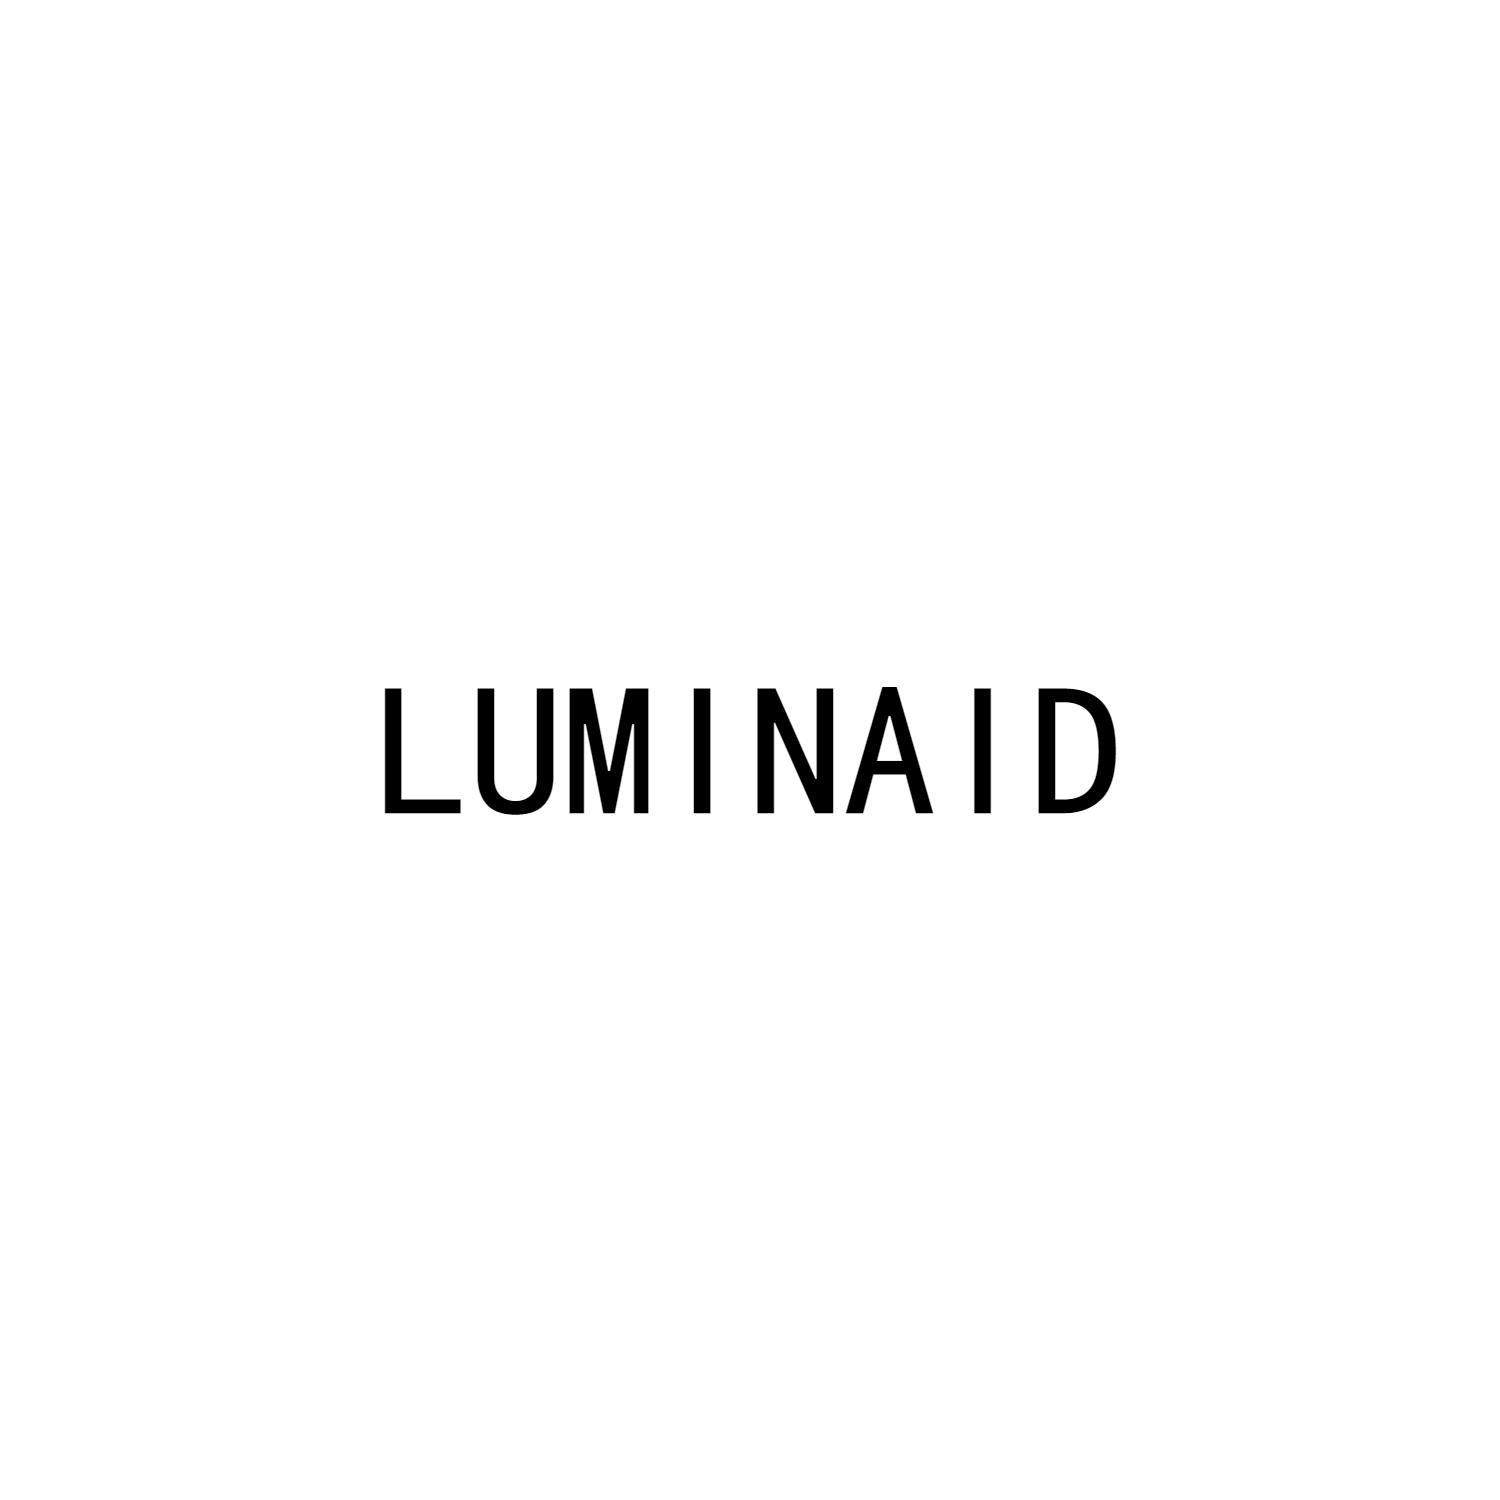 LUMINAID